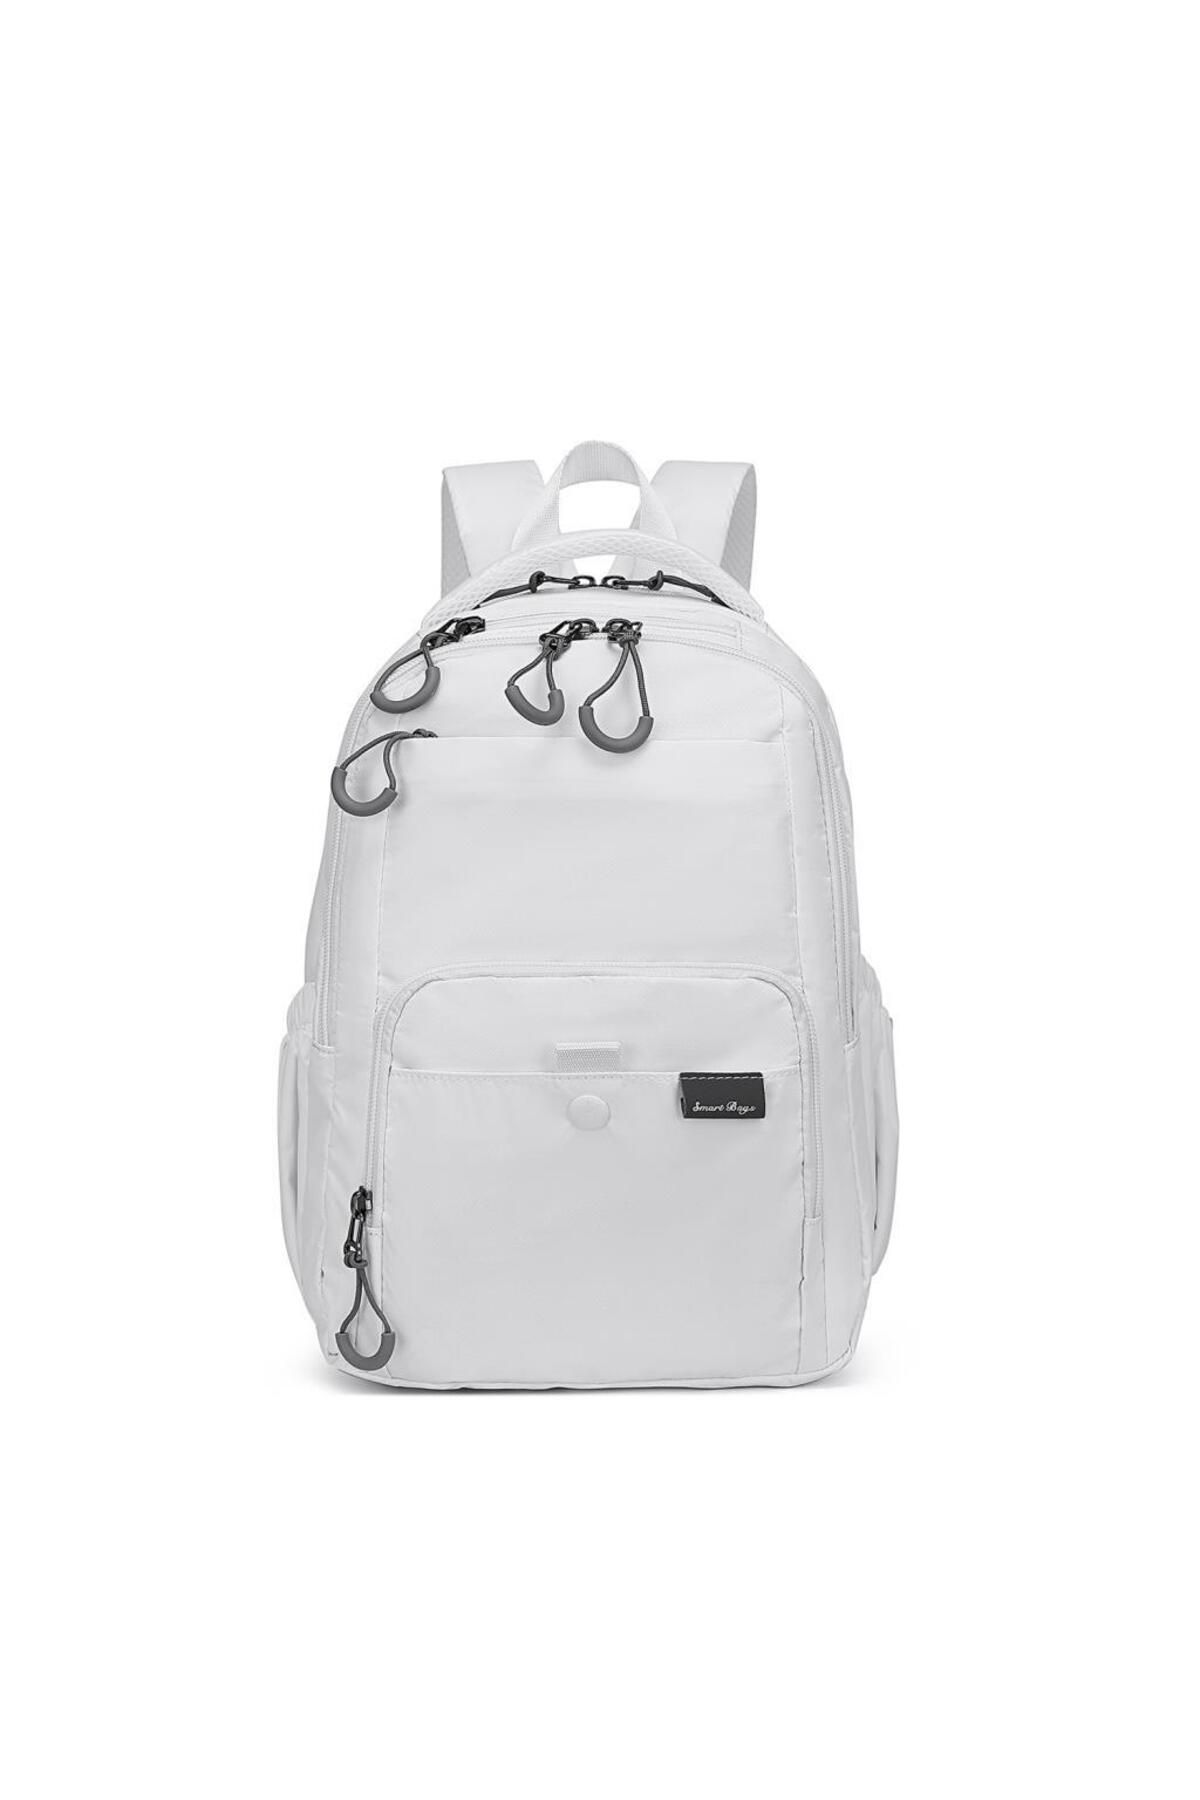 Smart Bags Ekstra Hafif Orta Boy Uniseks Sırt Çantası 3243